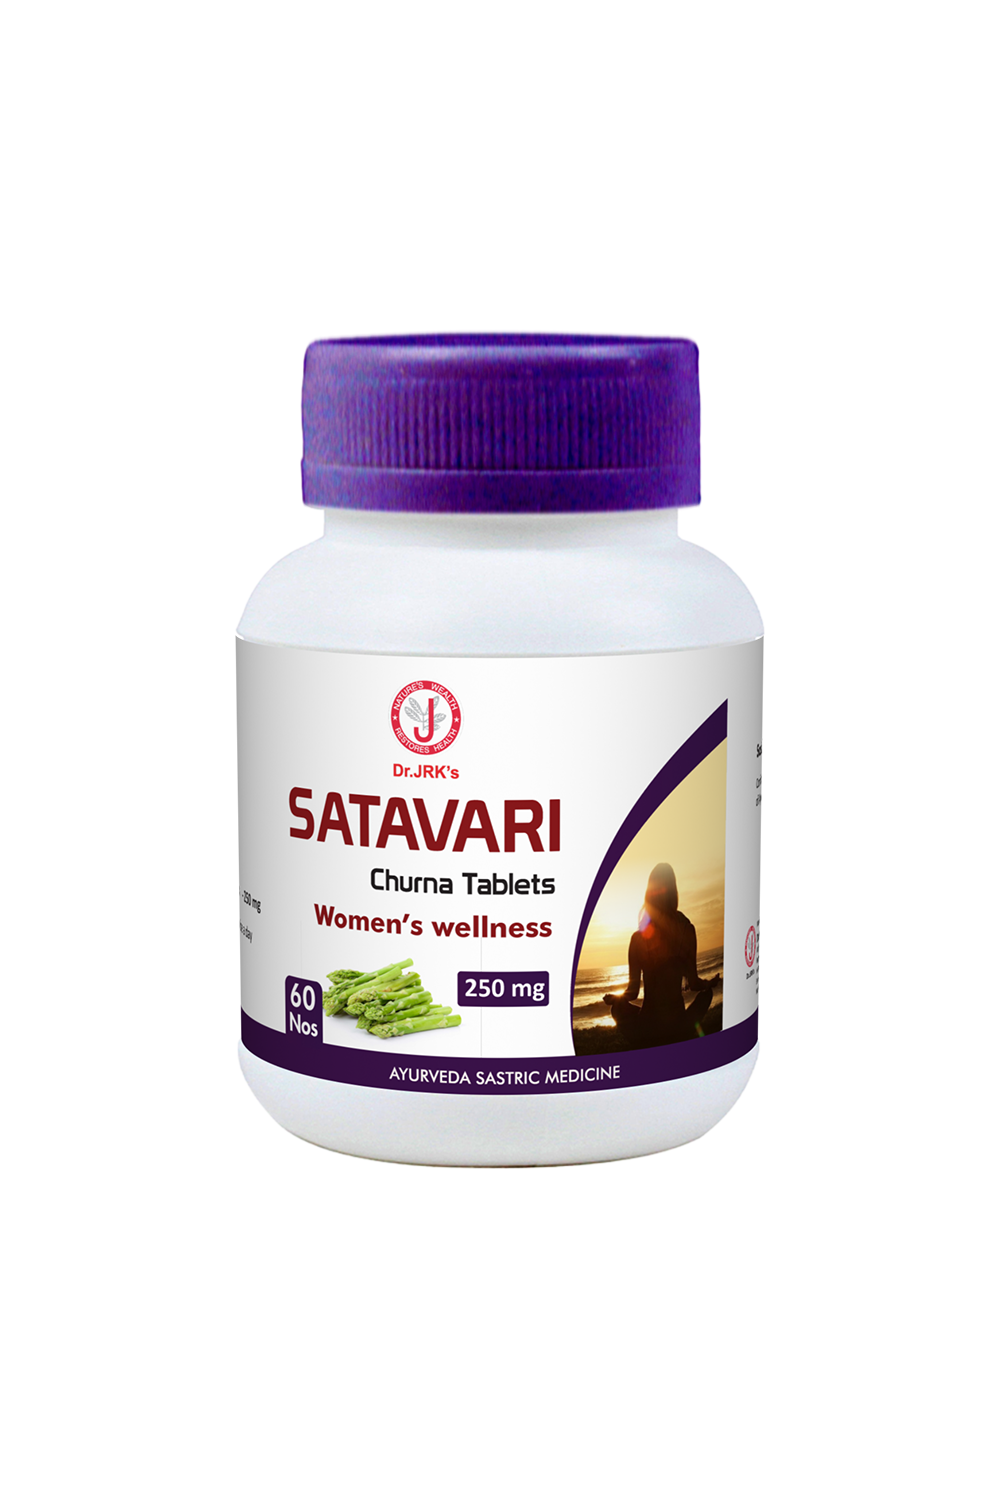 Dr. JRK's Satavari Churna Tablets